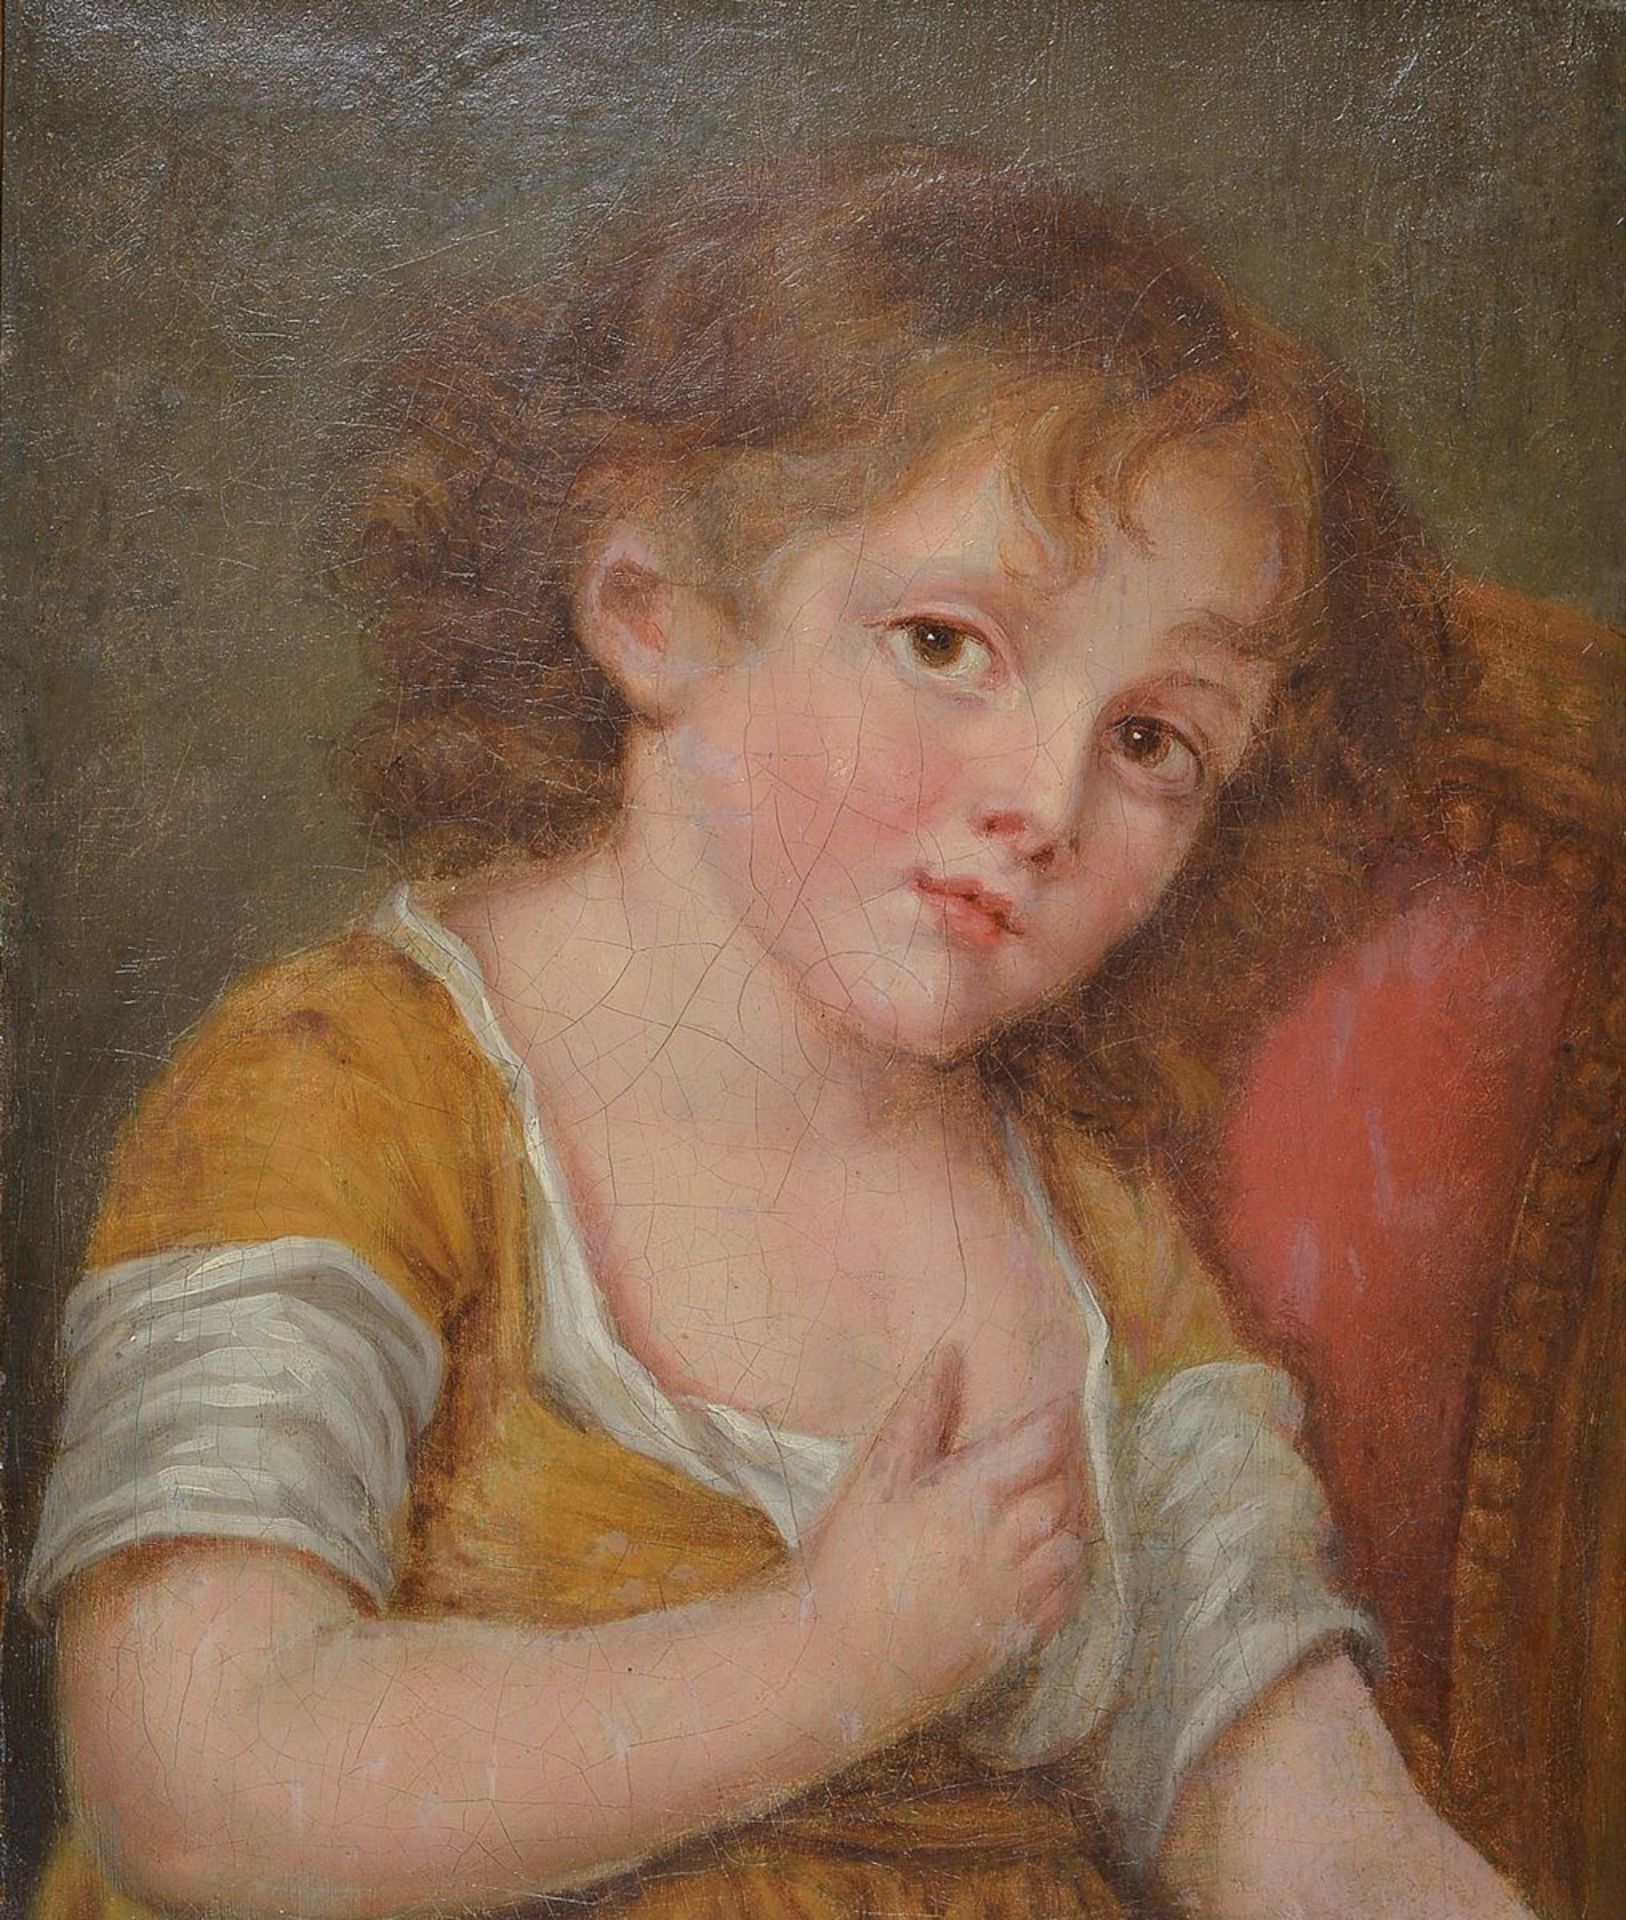 Unbekannter Künstler des 19. Jh., Porträt eines Kindes in der Art nach Jean Baptiste Greuze, Öl/Lwd,